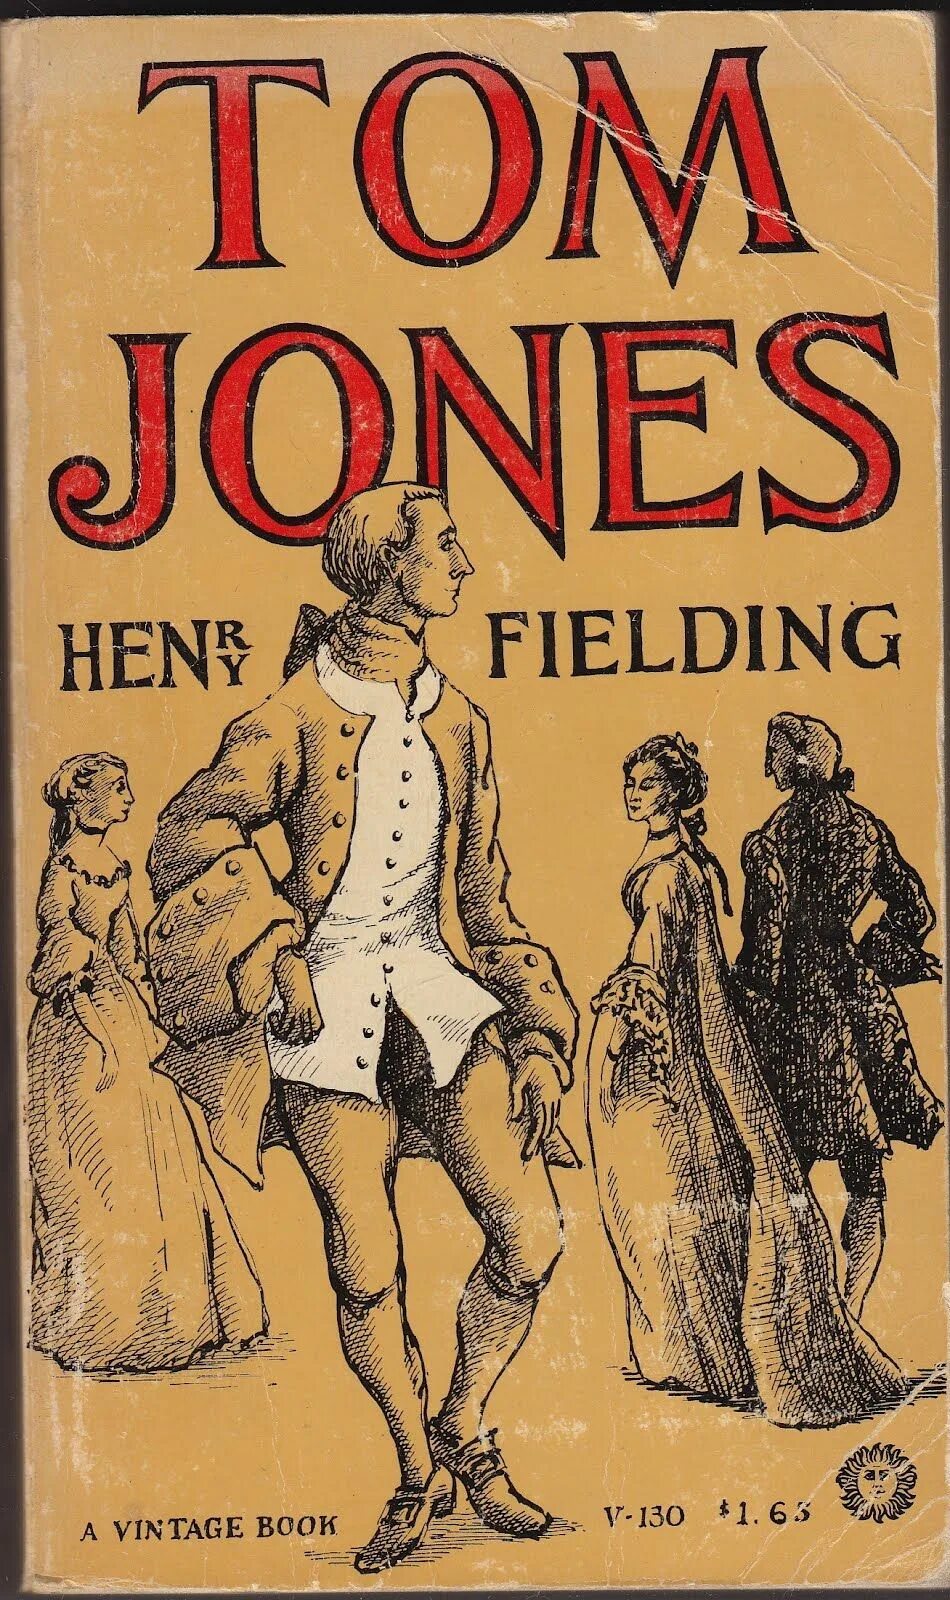 Филдинг история Тома Джонса найденыша иллюстрации. Fielding Henry "Tom Jones". История Тома Джонса найденыша. Филдинг найденыш